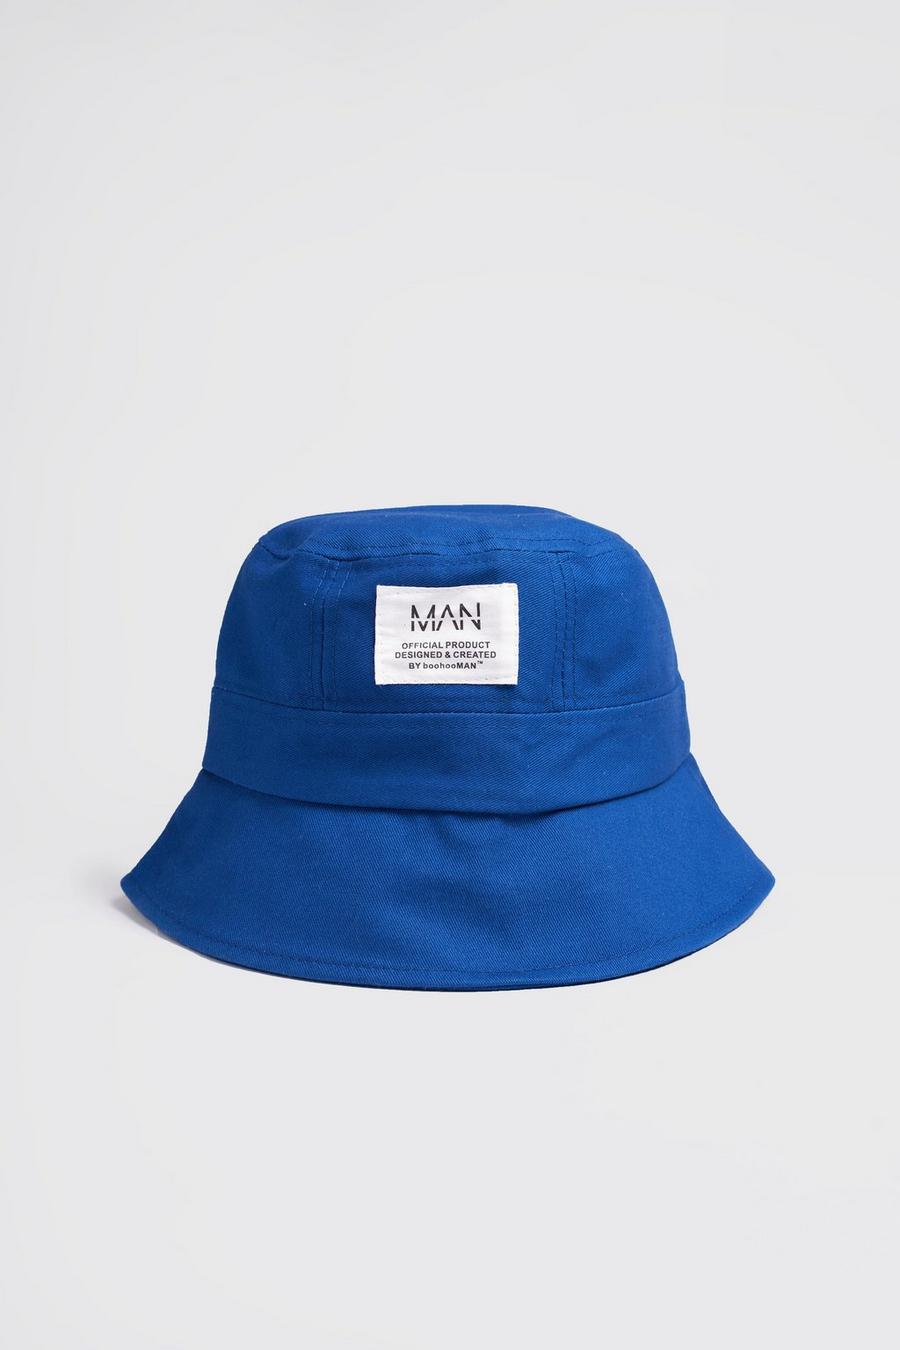 כחול כובע טמבל עם תווית ארוגה וכיתוב MAN וקו חוצה  image number 1